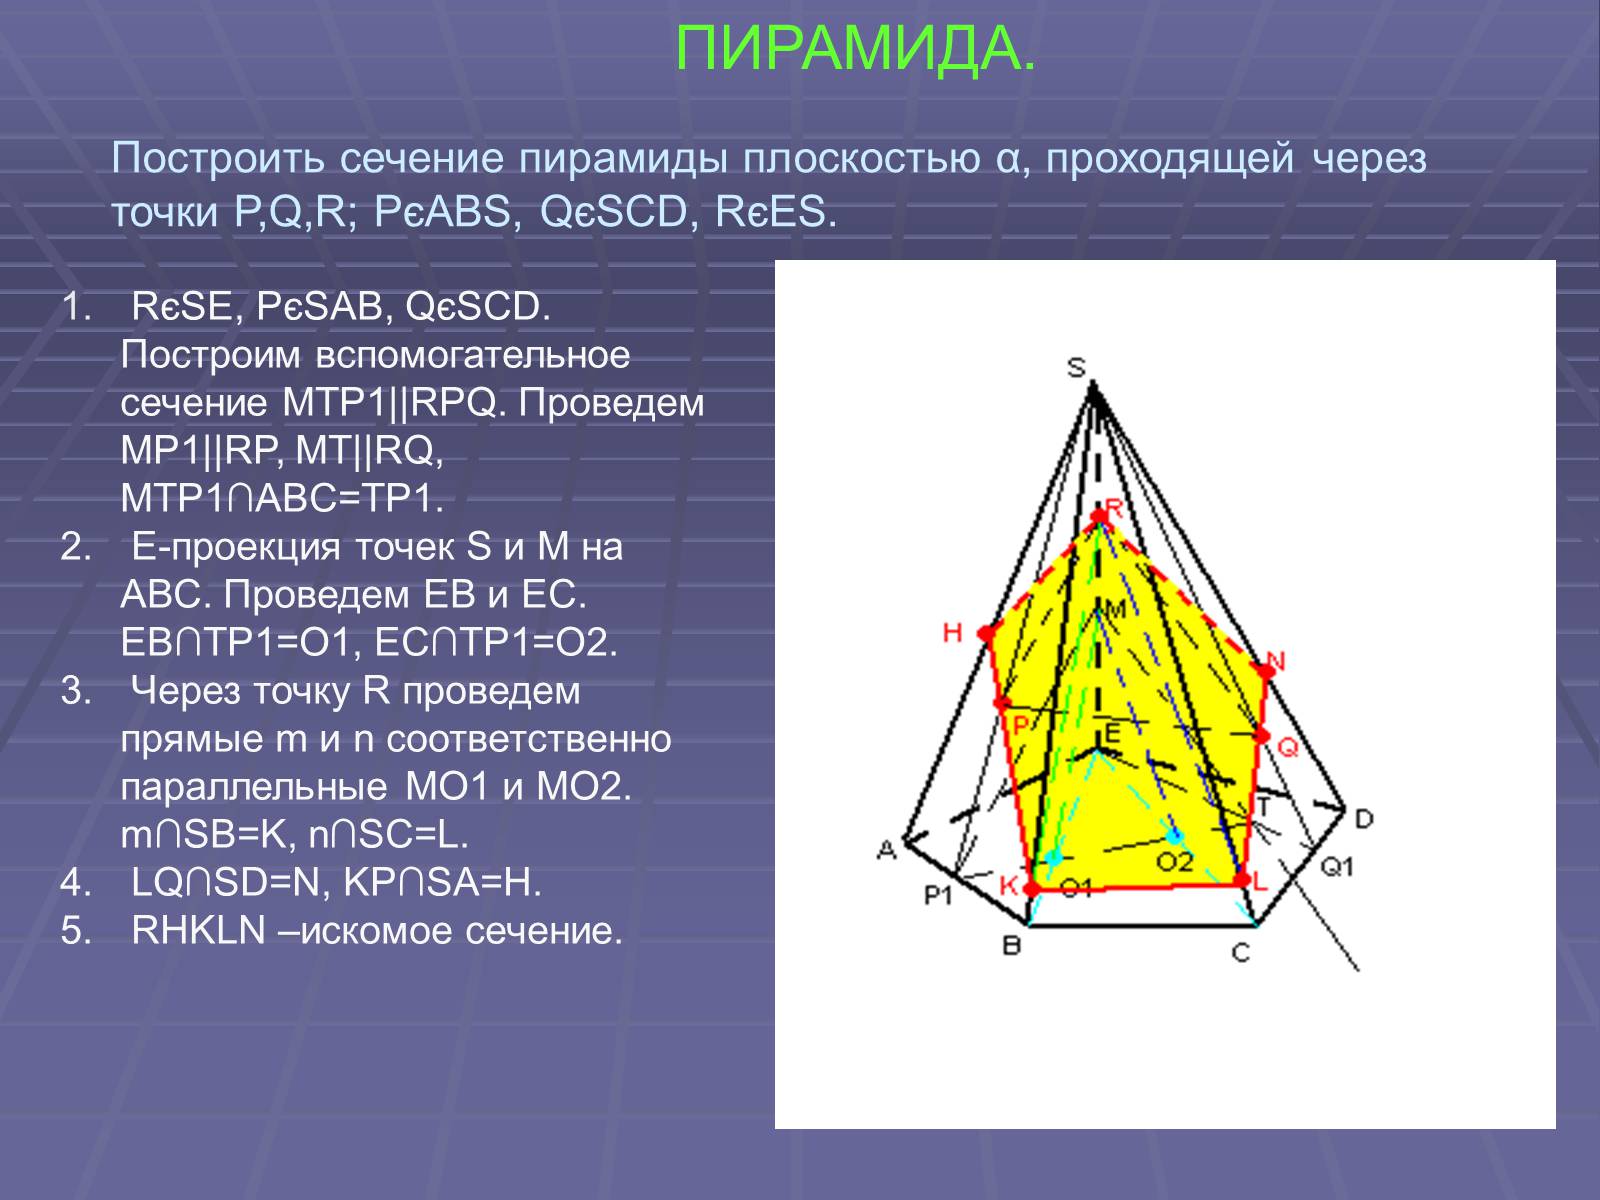 Сечением пирамиды sabc является. Сечение пятиугольной пирамиды по трем точкам. Сечение пятиугольной пирамиды по 3 точкам. Построение сечения пятиугольной пирамиды по трем точкам. Построить сечение пирамиды плоскостью.